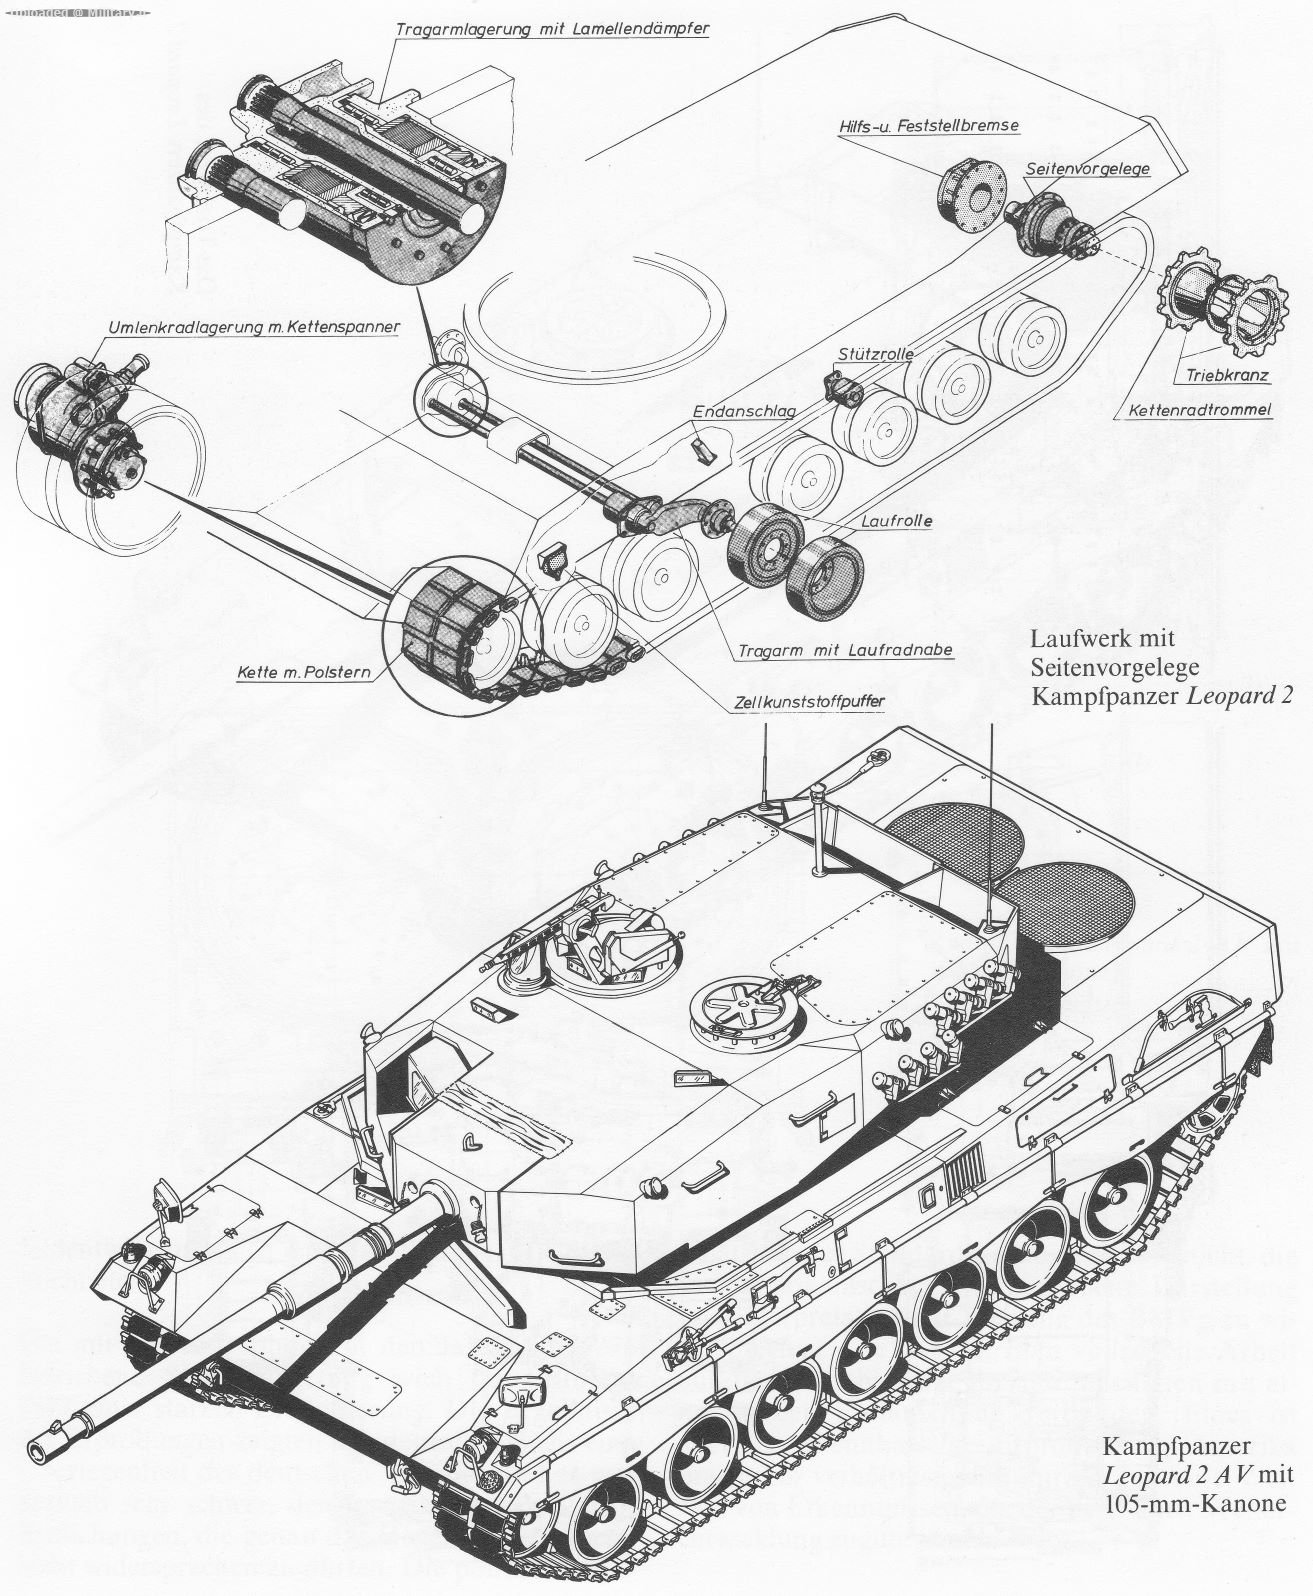 Kampfpanzer-Leopard-2-AV-105-mm-3D.jpg